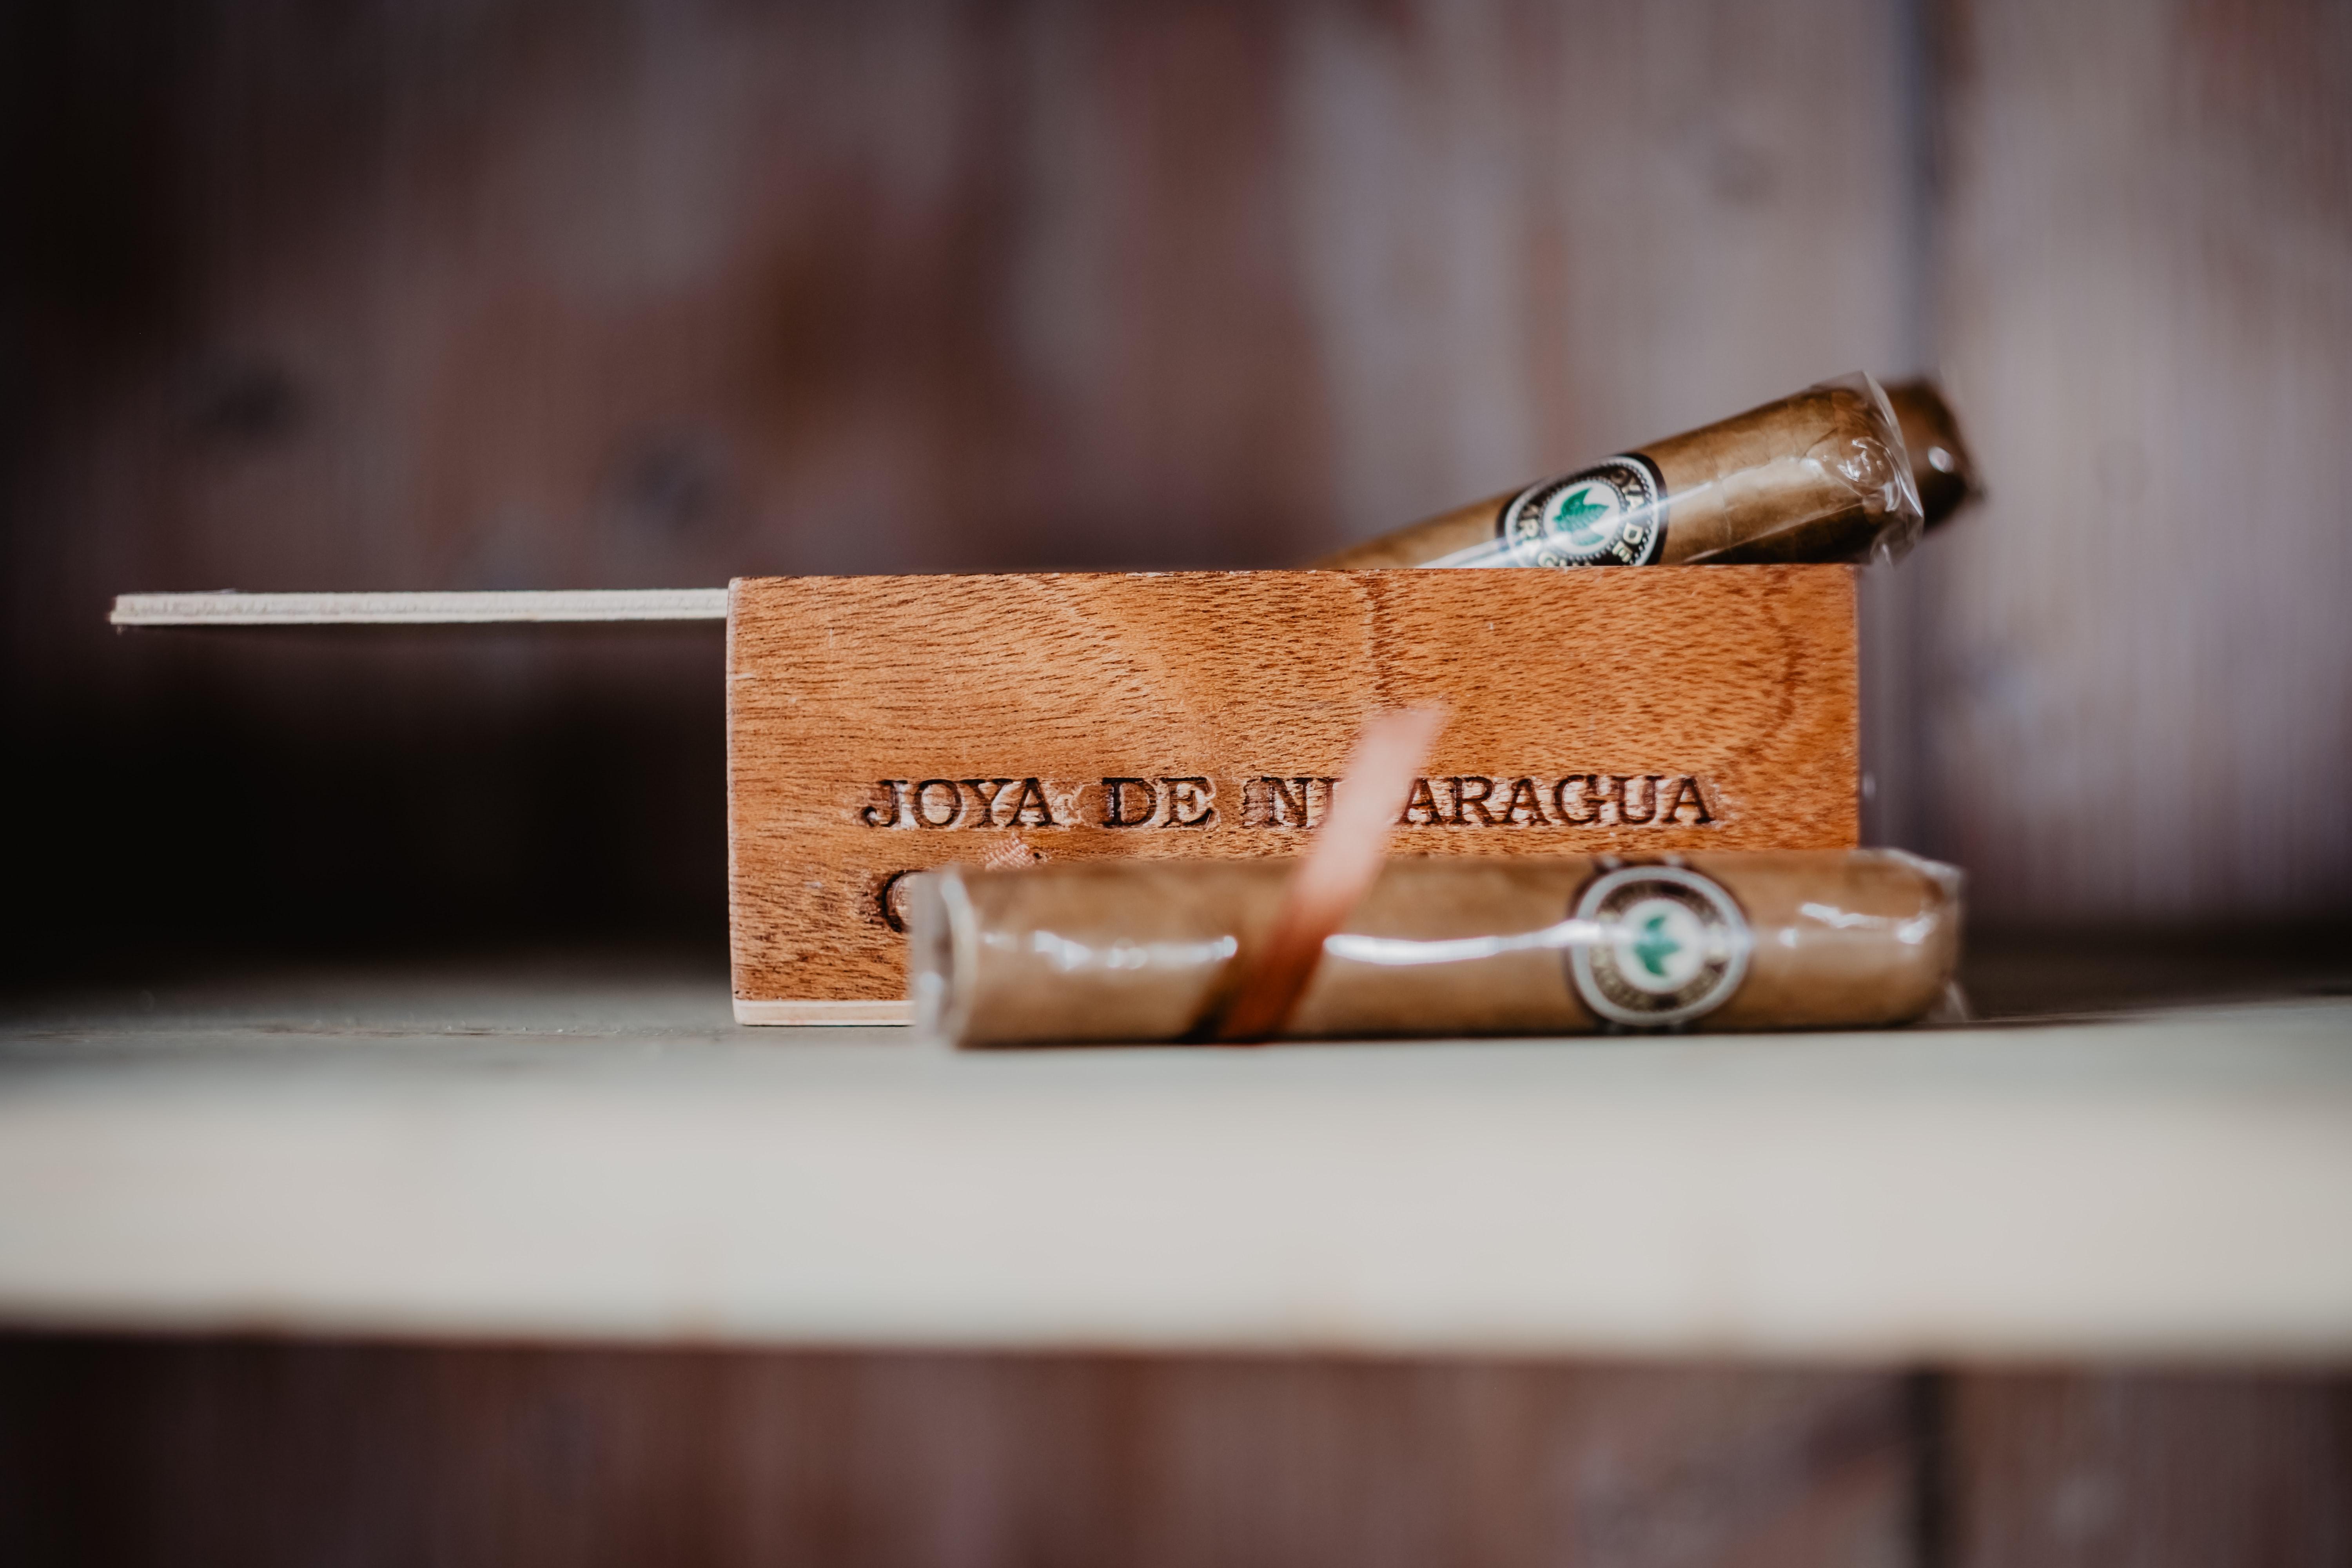 Joya de Nicaragua, известной как старейшая марка сигар премиум-класса в Никарагуа, существующая с 1968 года.